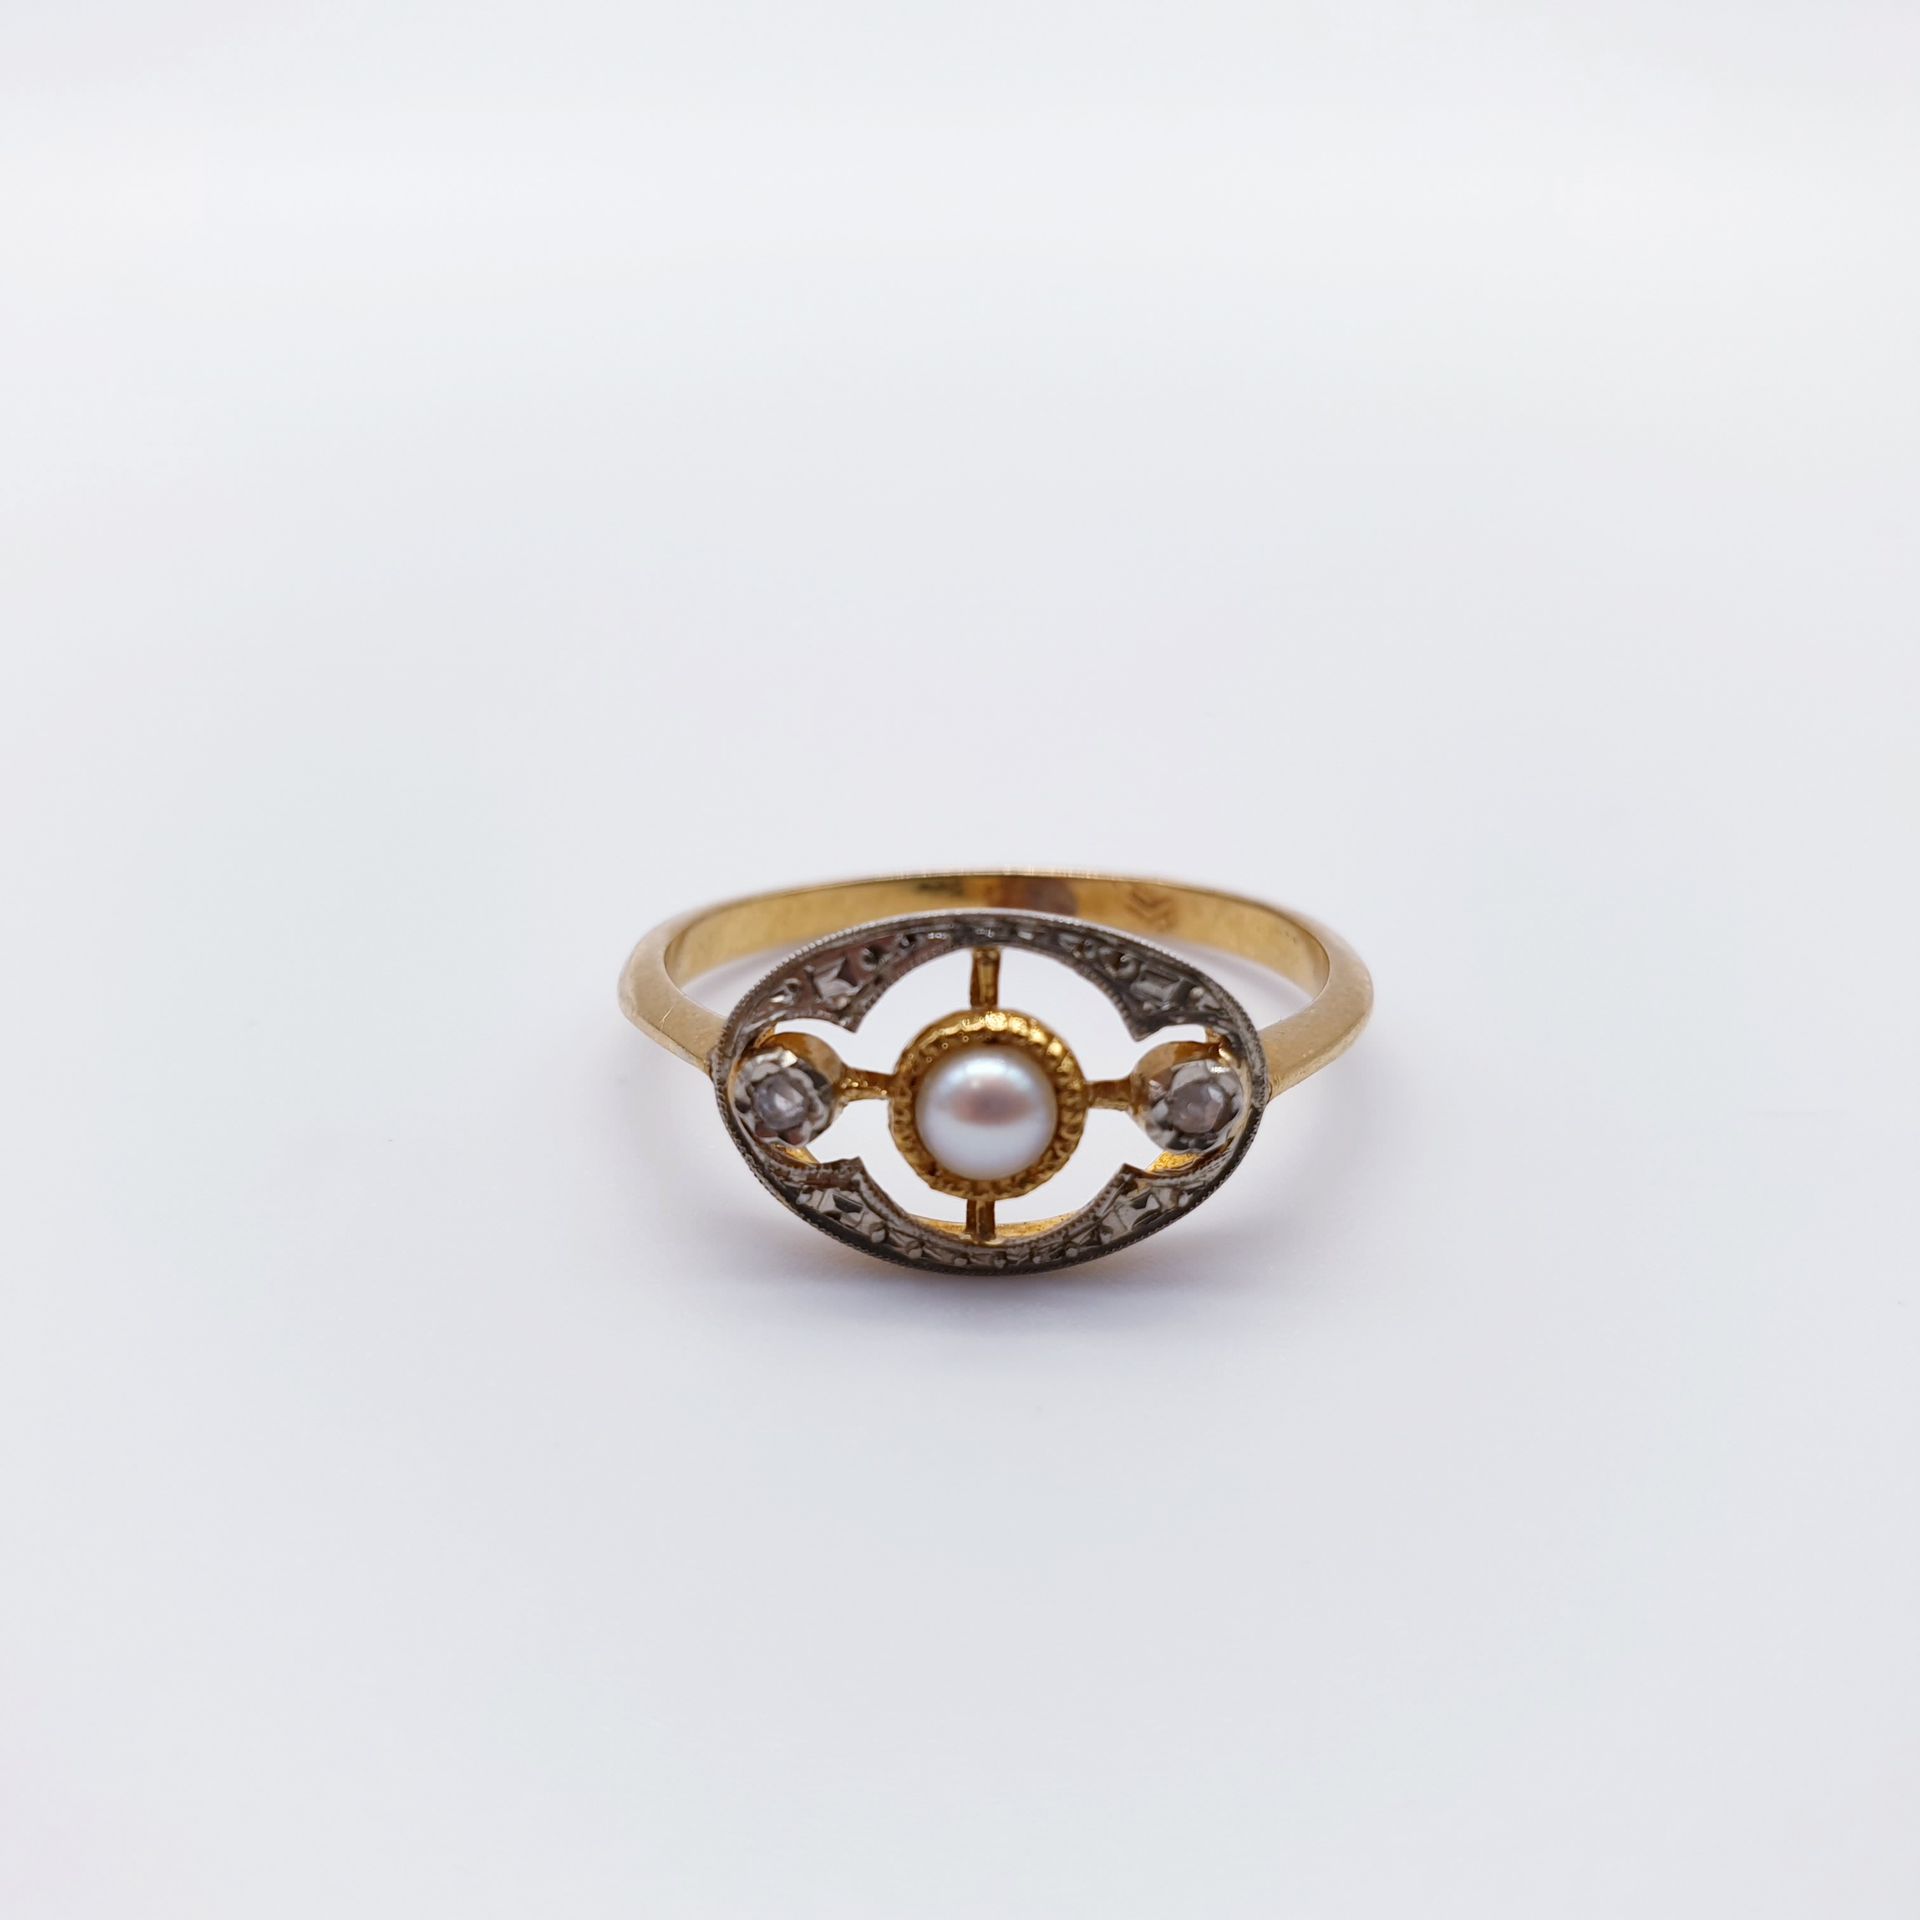 Null 750°双色金戒指，镶嵌一颗珍珠和两朵玫瑰花

毛重 : 2,25 g

TDD : 58